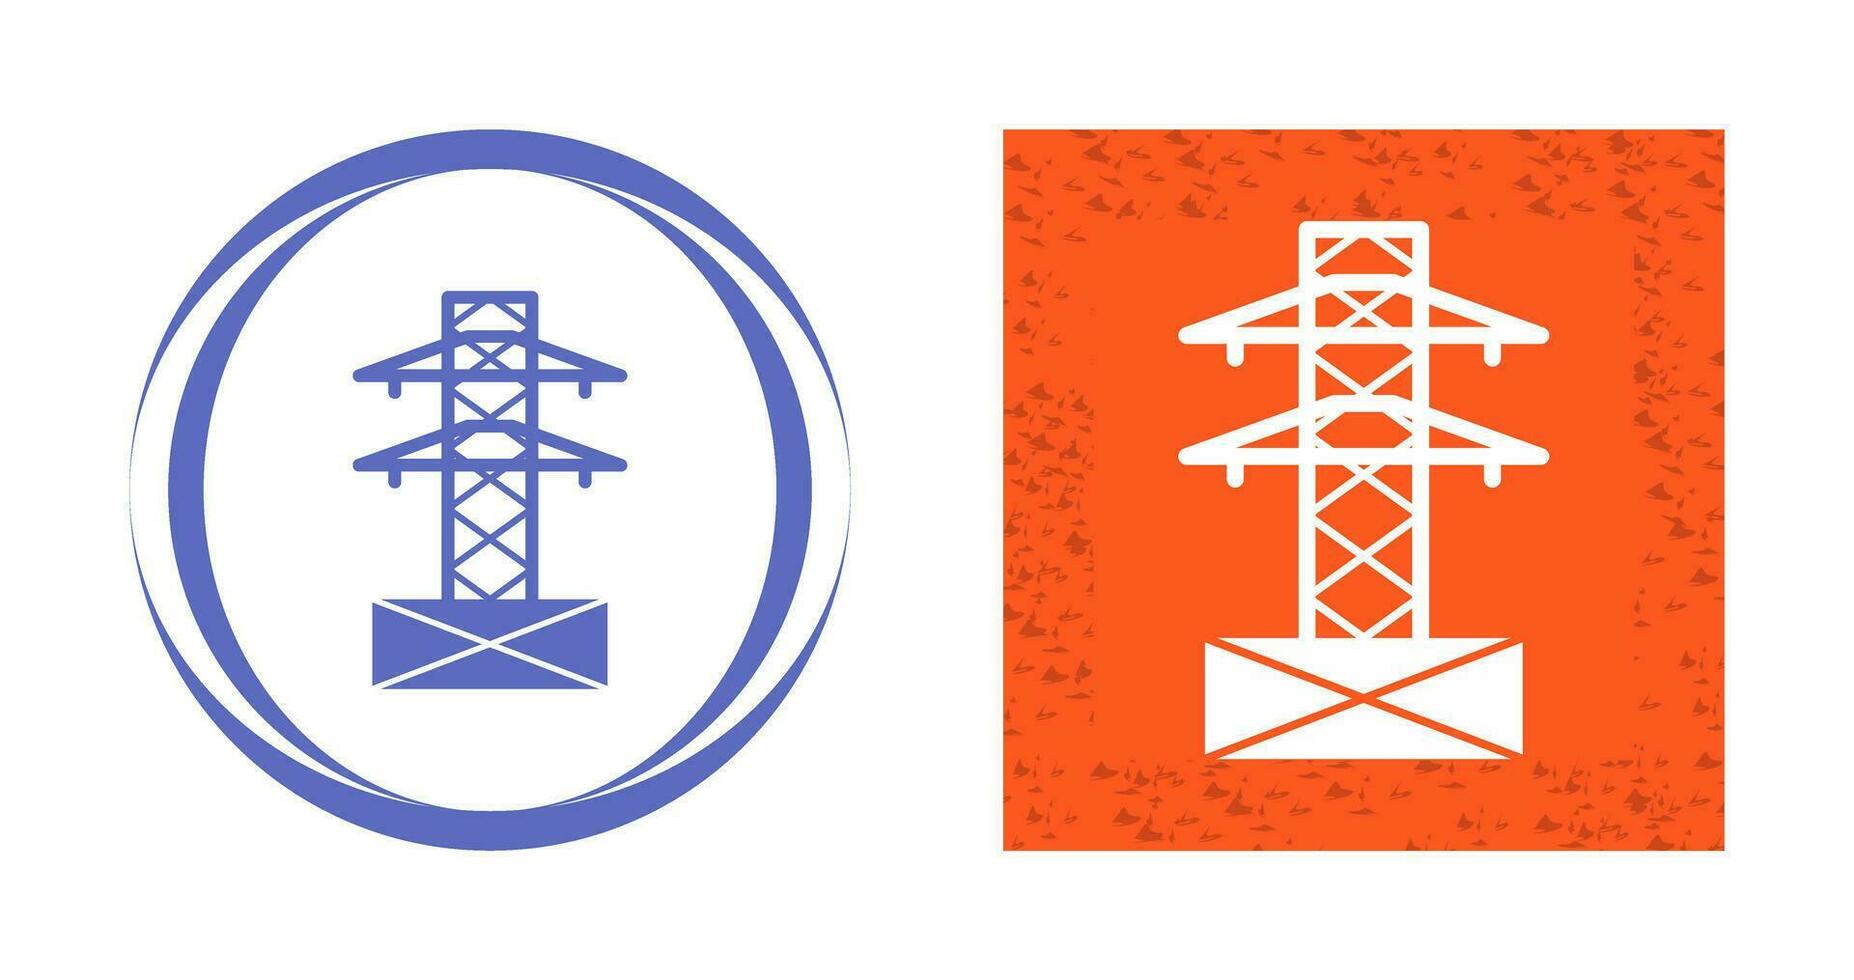 elettricità Torre vettore icona